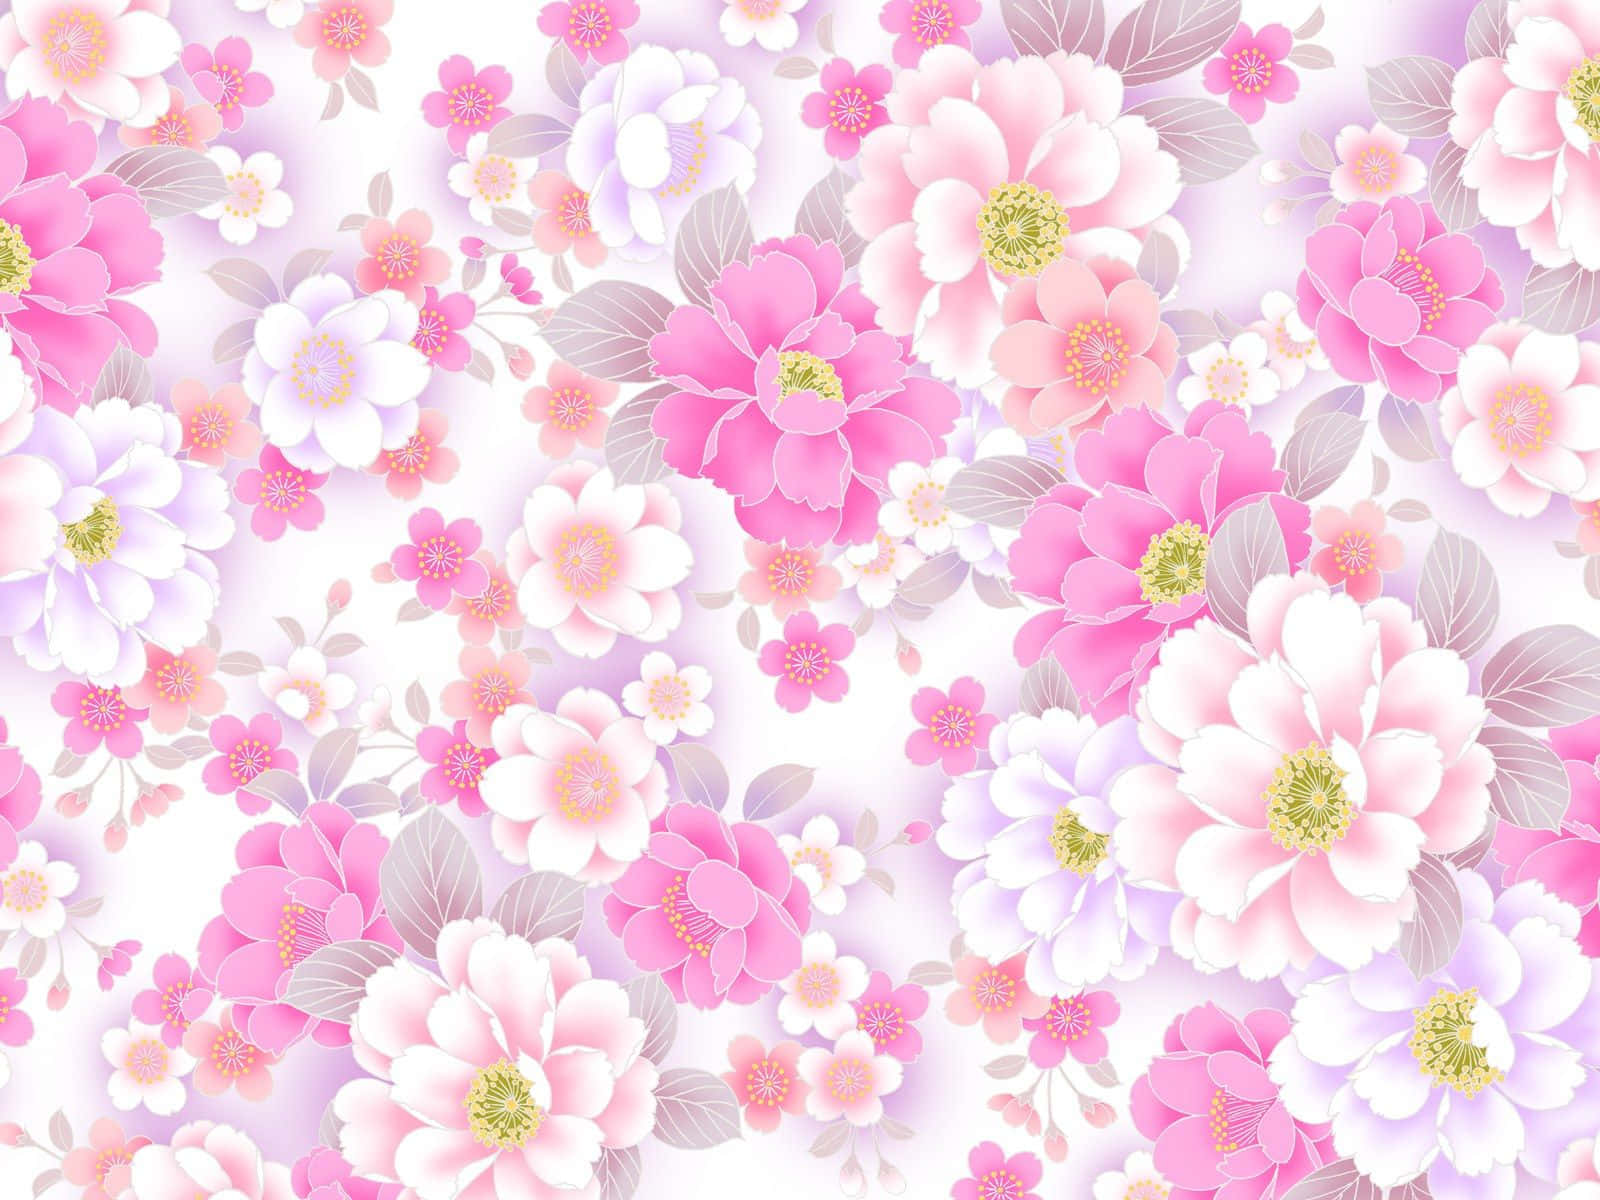 Nyd skønheden af naturen med denne smukke pink floral tapet! Wallpaper